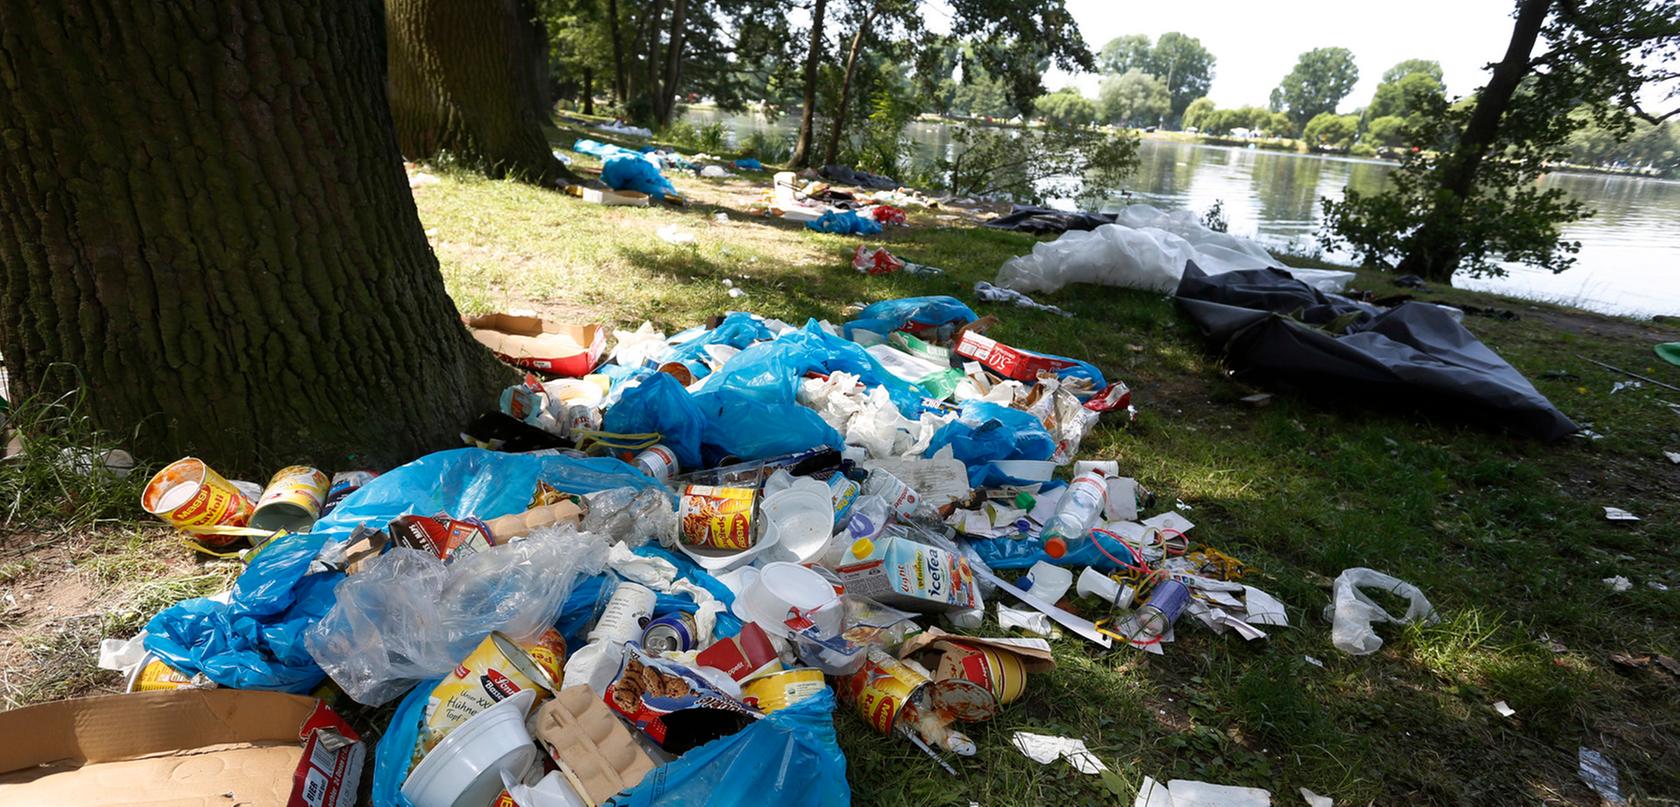 Rund 70.000 Besucher haben hunderte Tonnen Müll auf dem Festivalgelände zurückgelassen. Bis Samstag sollen die Grünflächen wieder im sauberen Zustand sein.